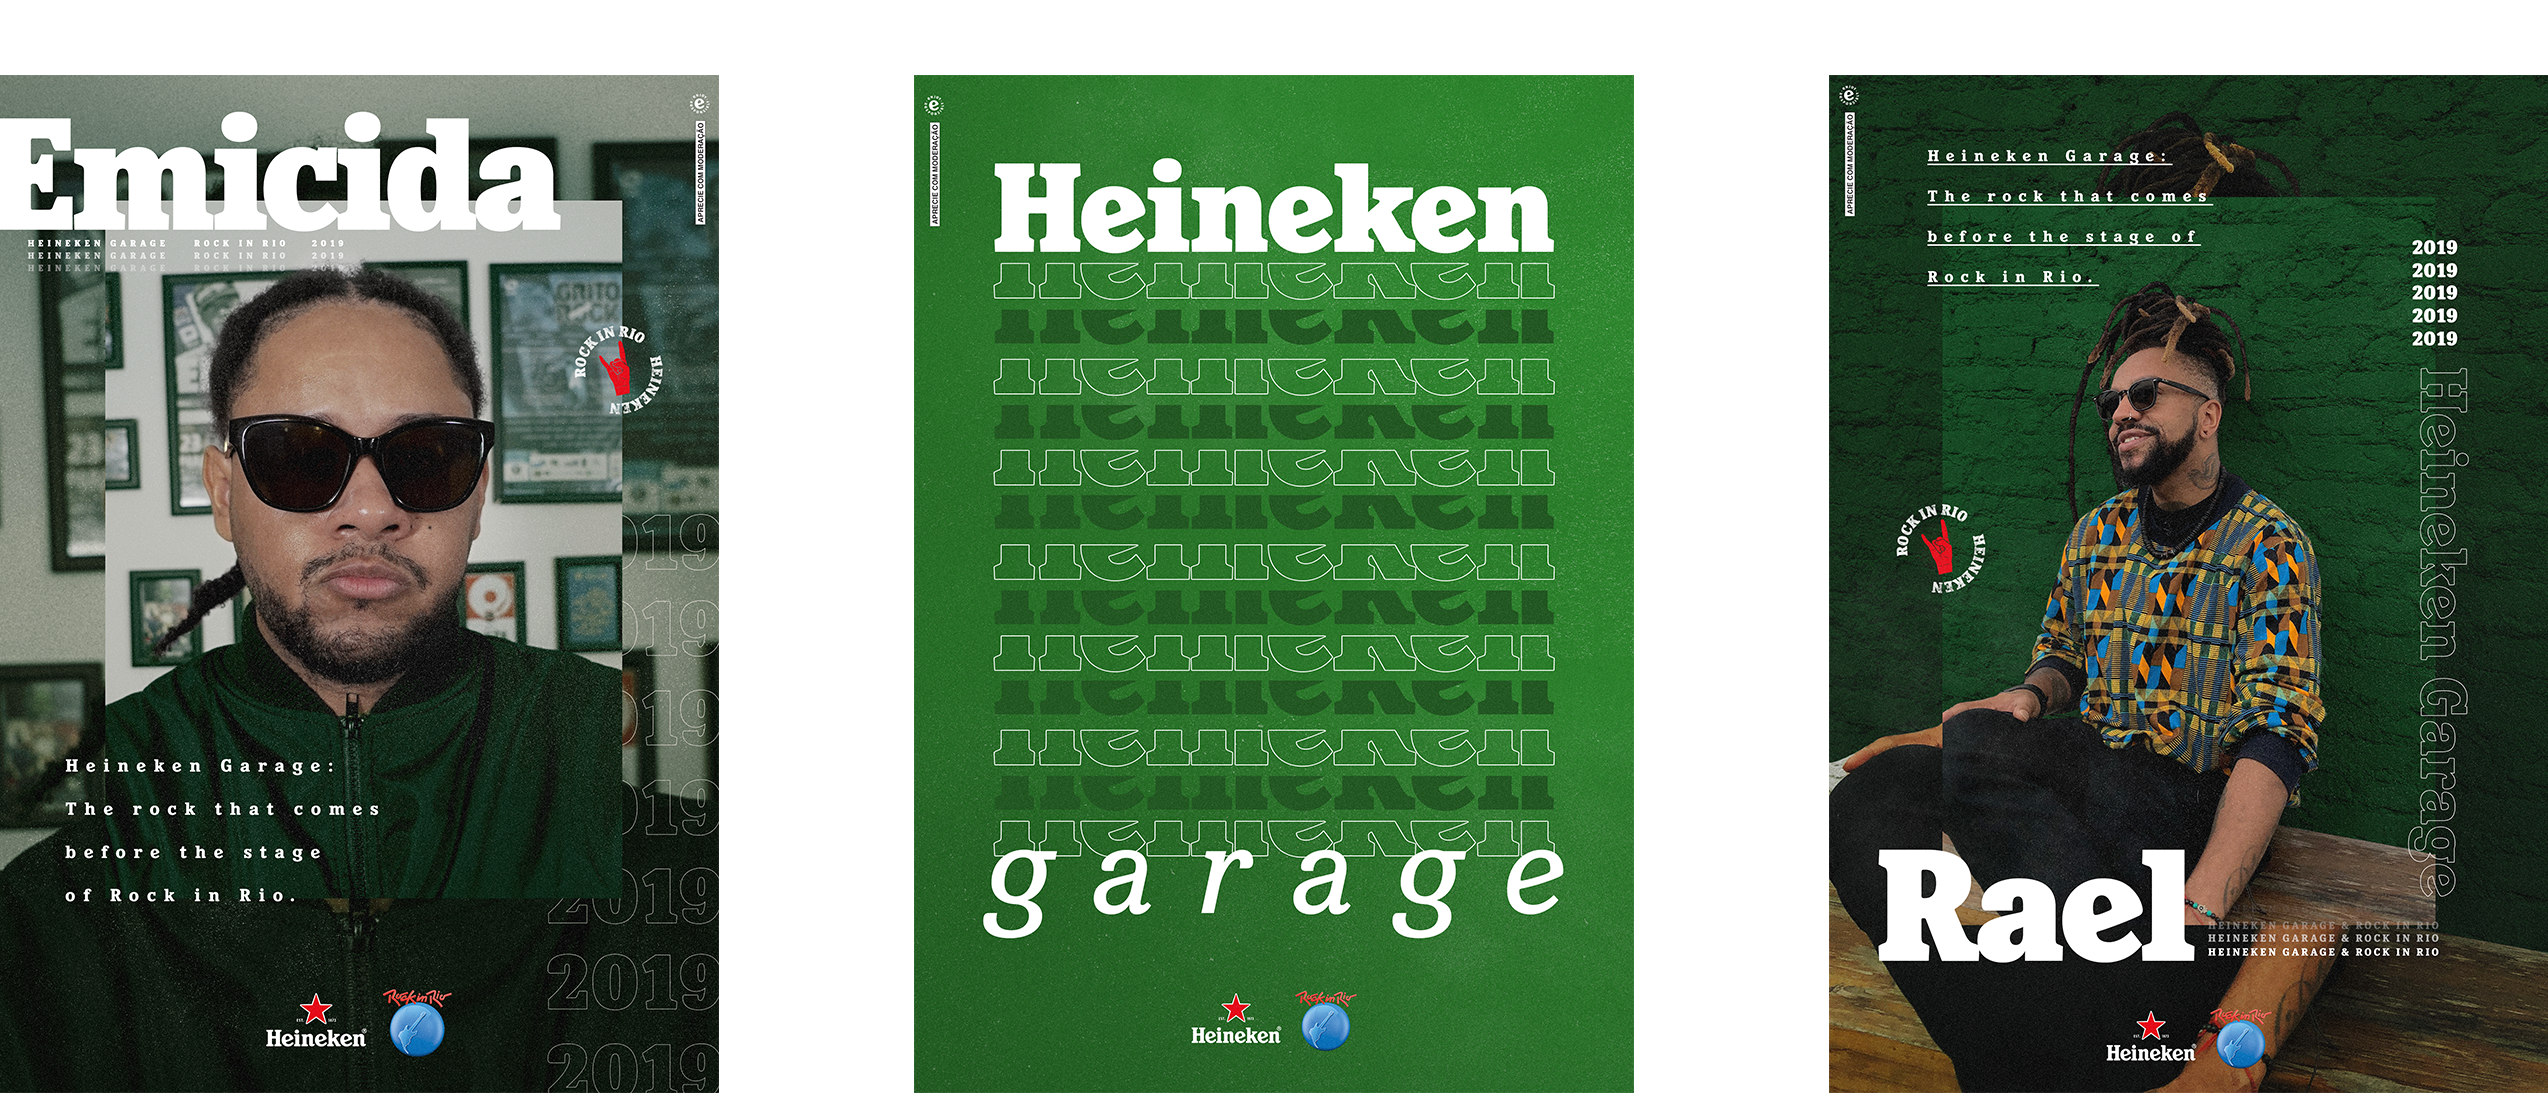 00_garages